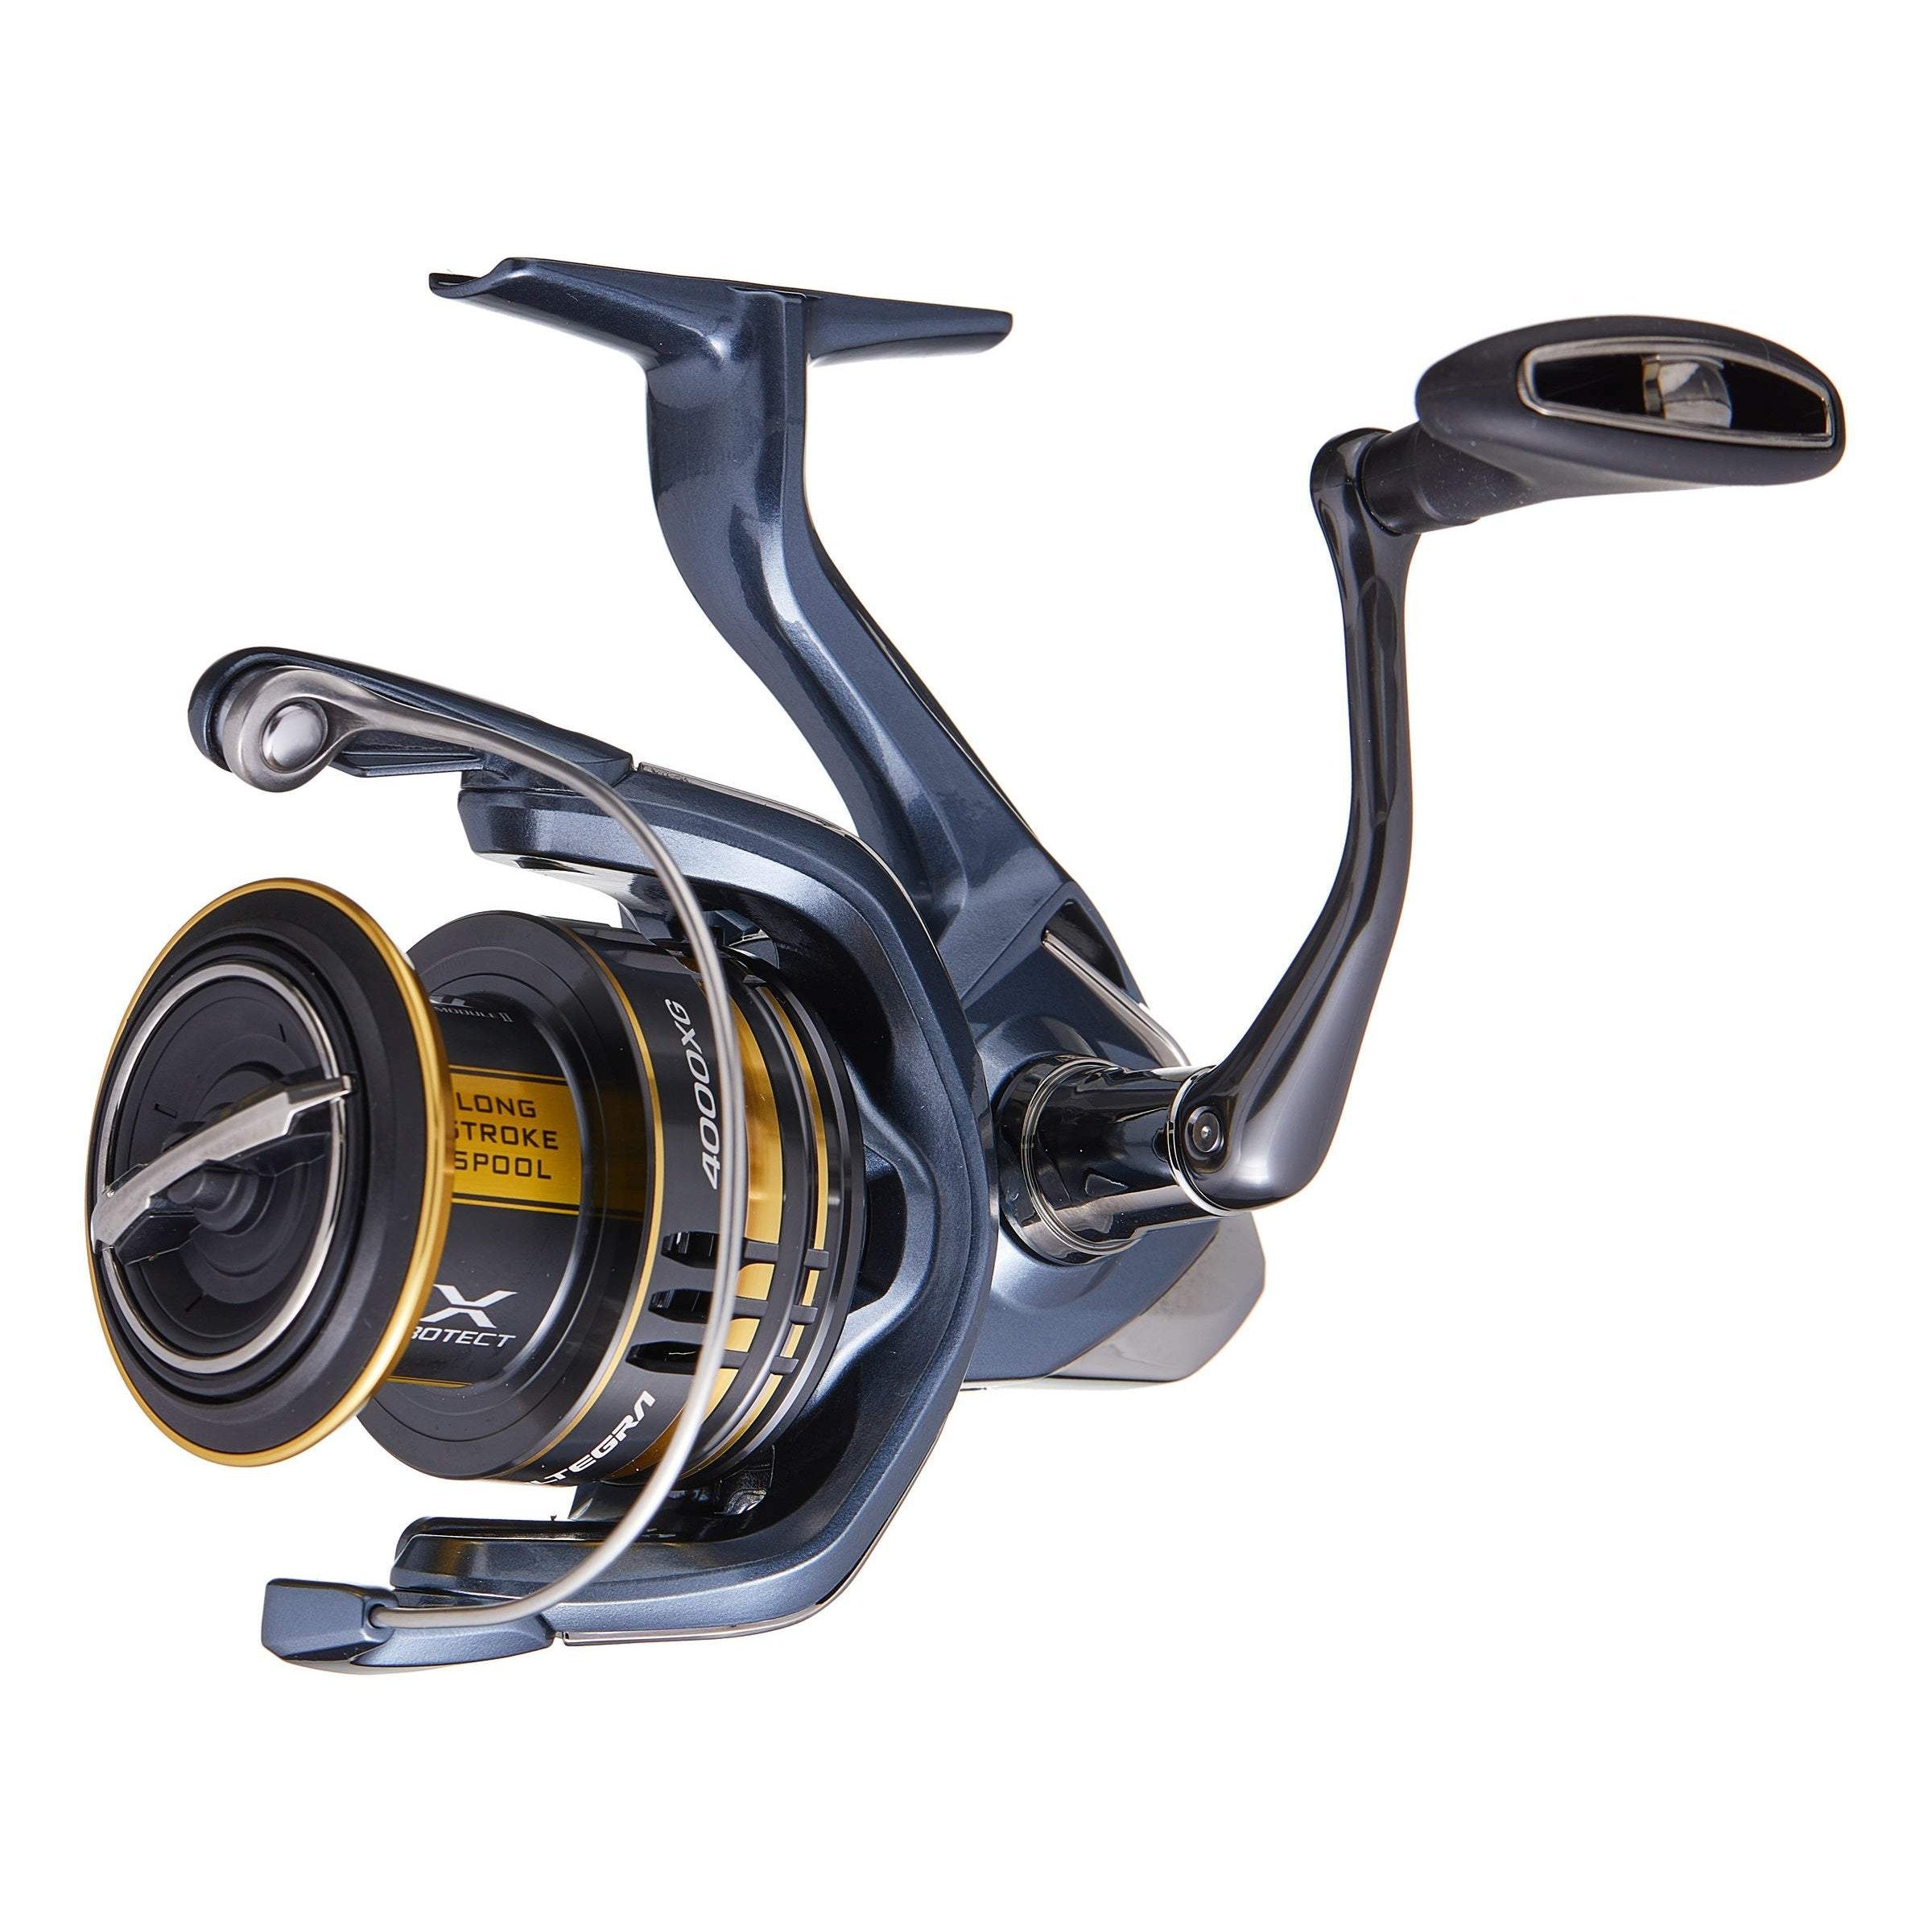 Pflueger President XT Spinning Reel – Hammonds Fishing